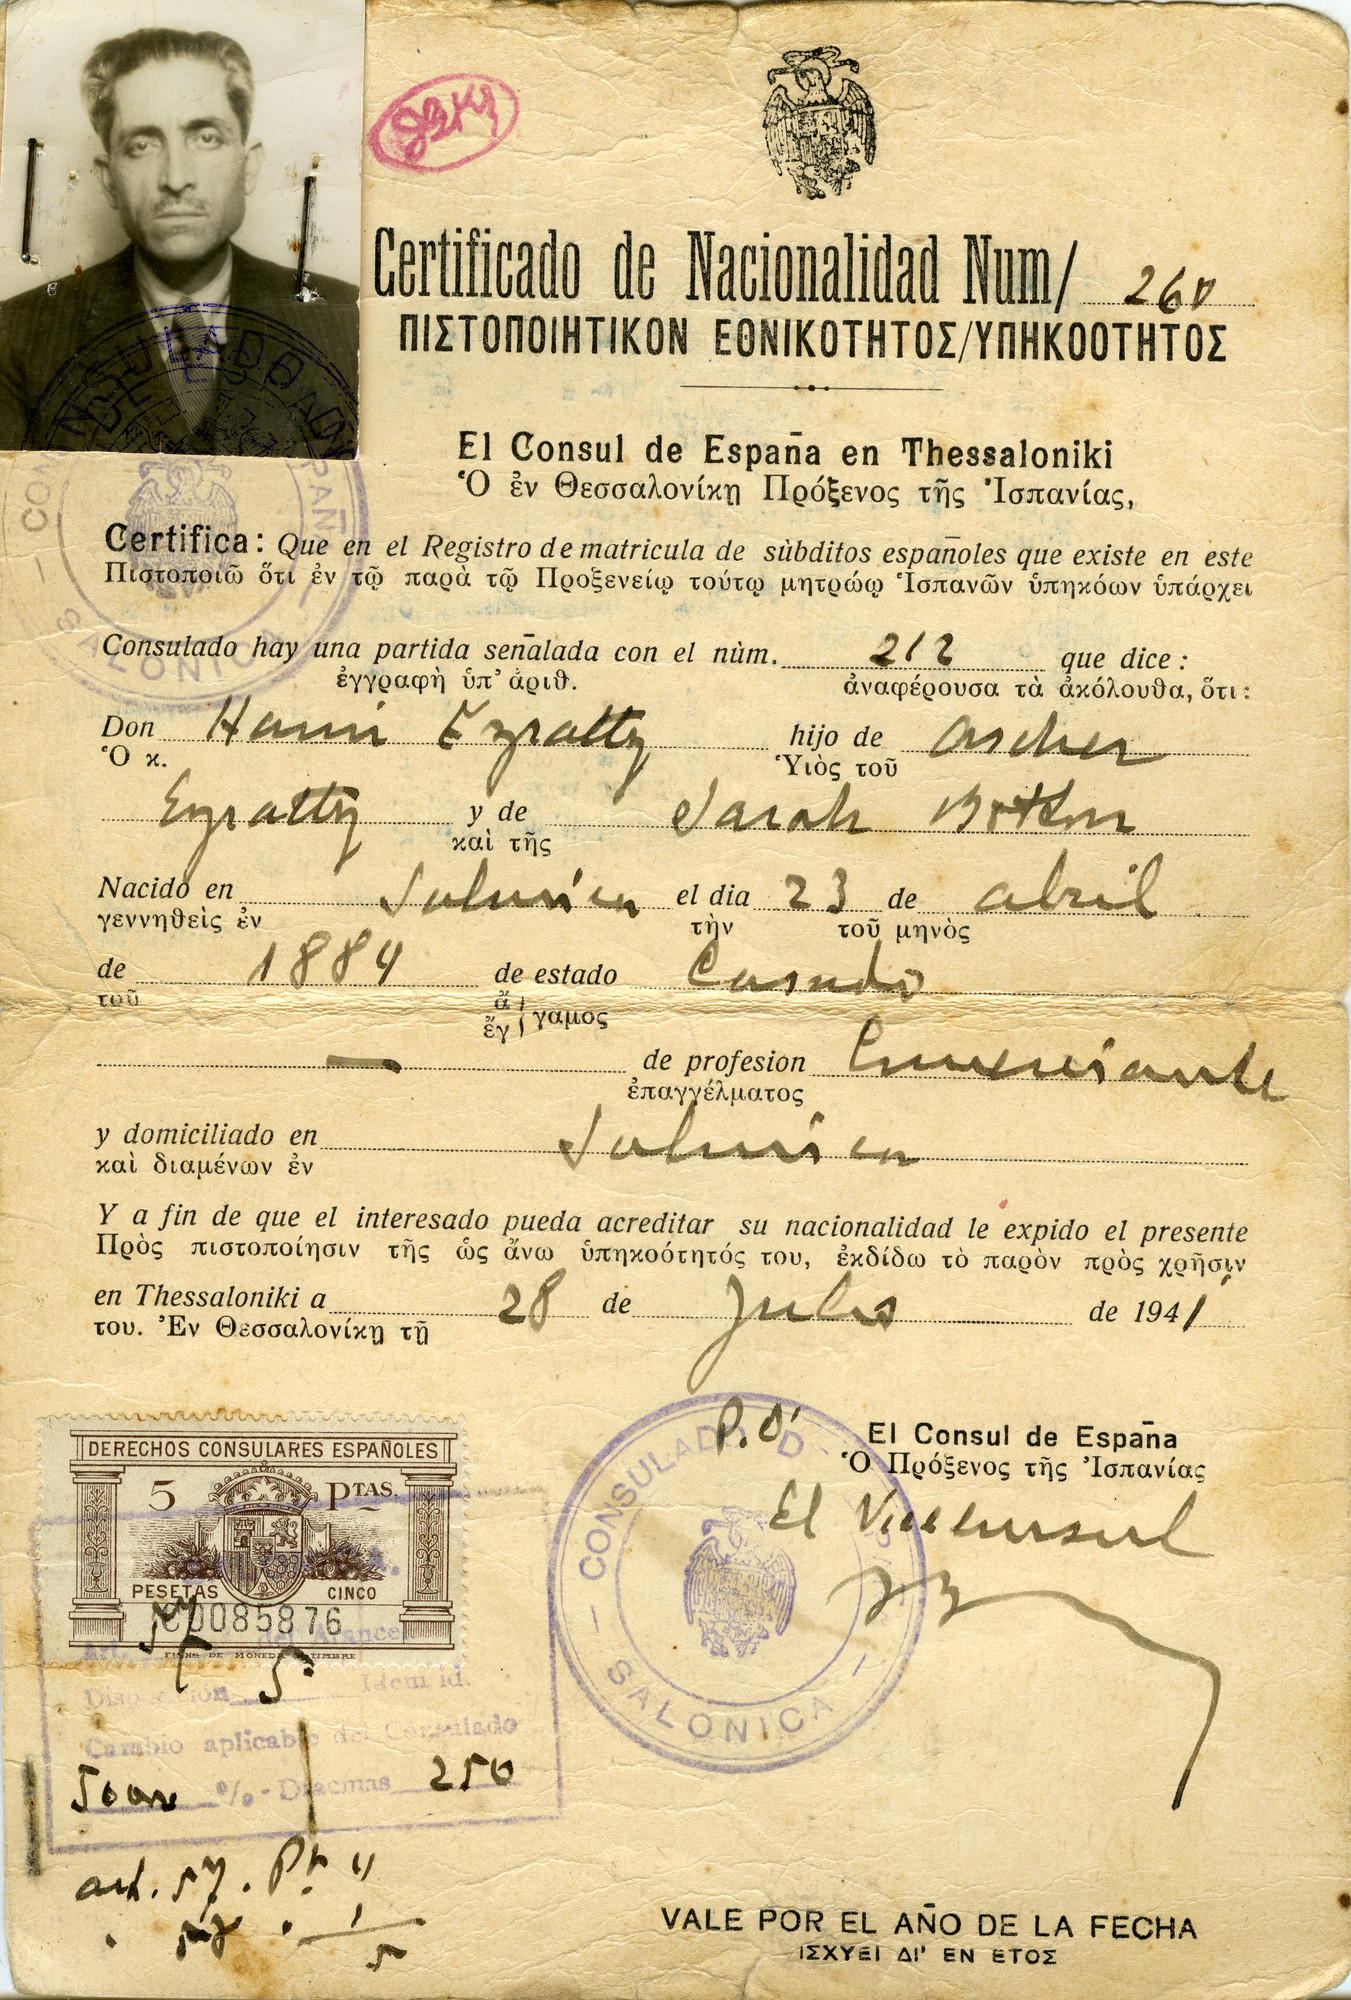 Spanish Certificate of Nationality for Haim Ezratty.